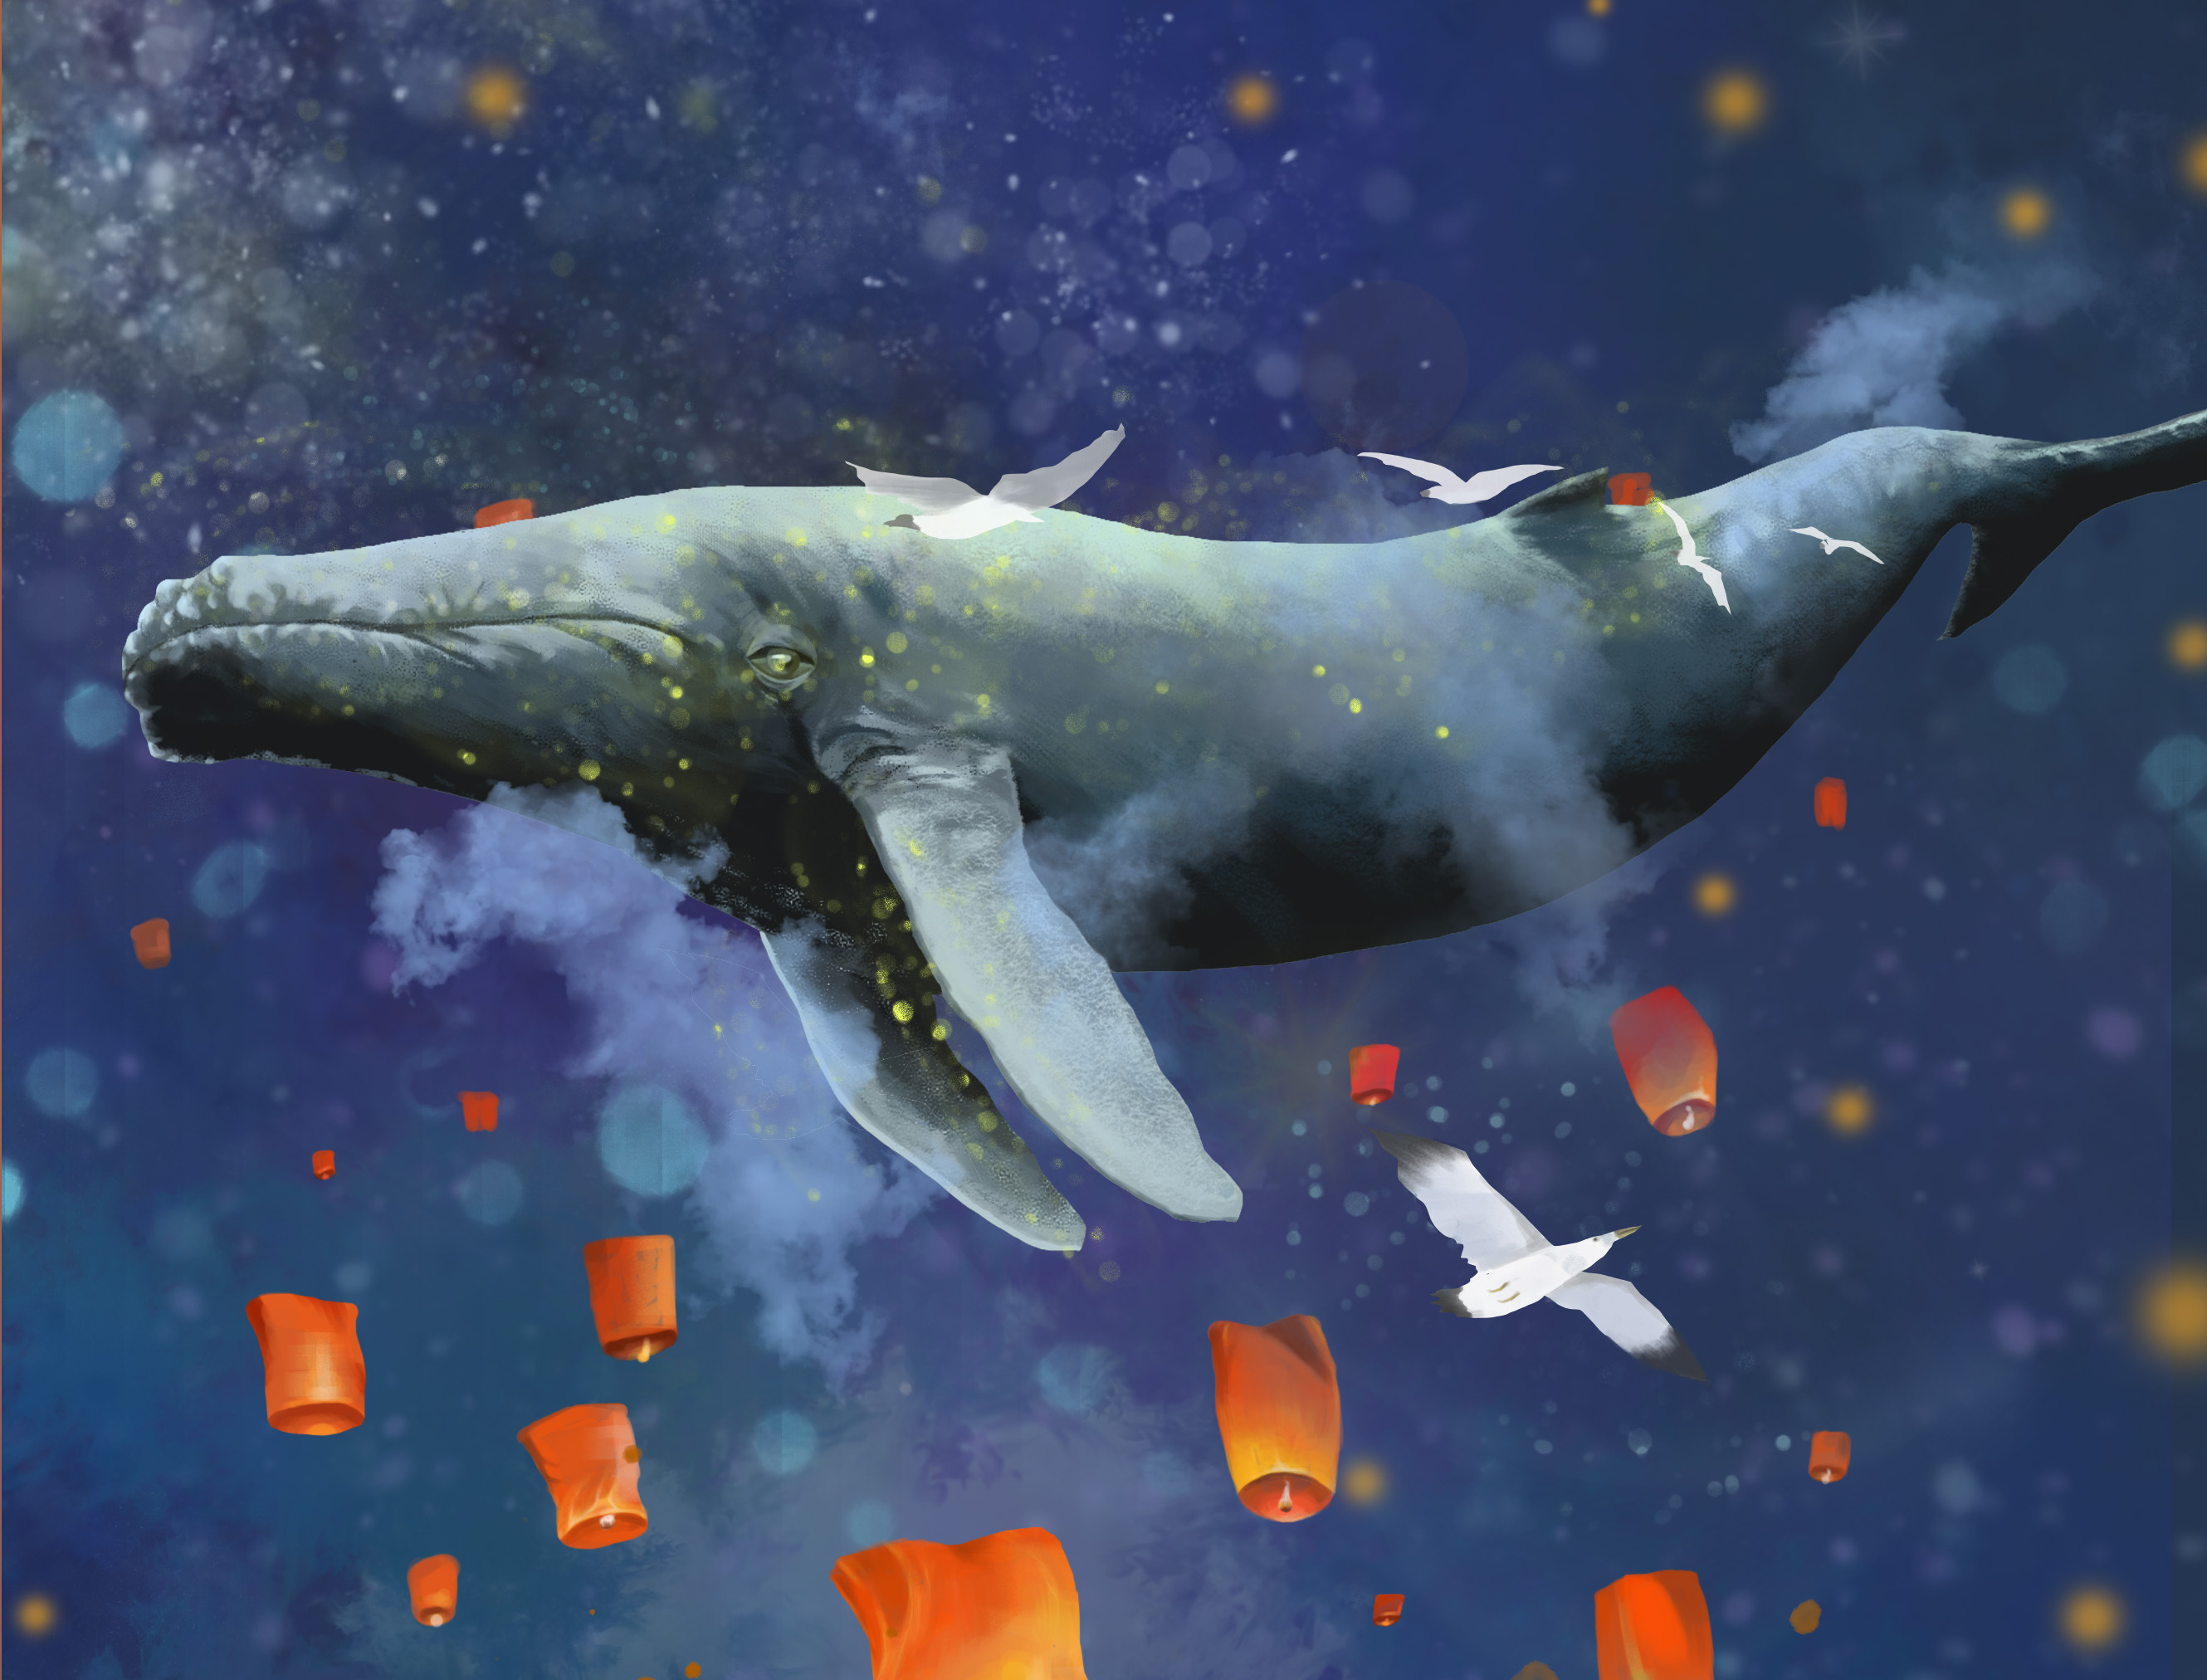 【鲸】绝美壁纸分享 第二期 - 哔哩哔哩